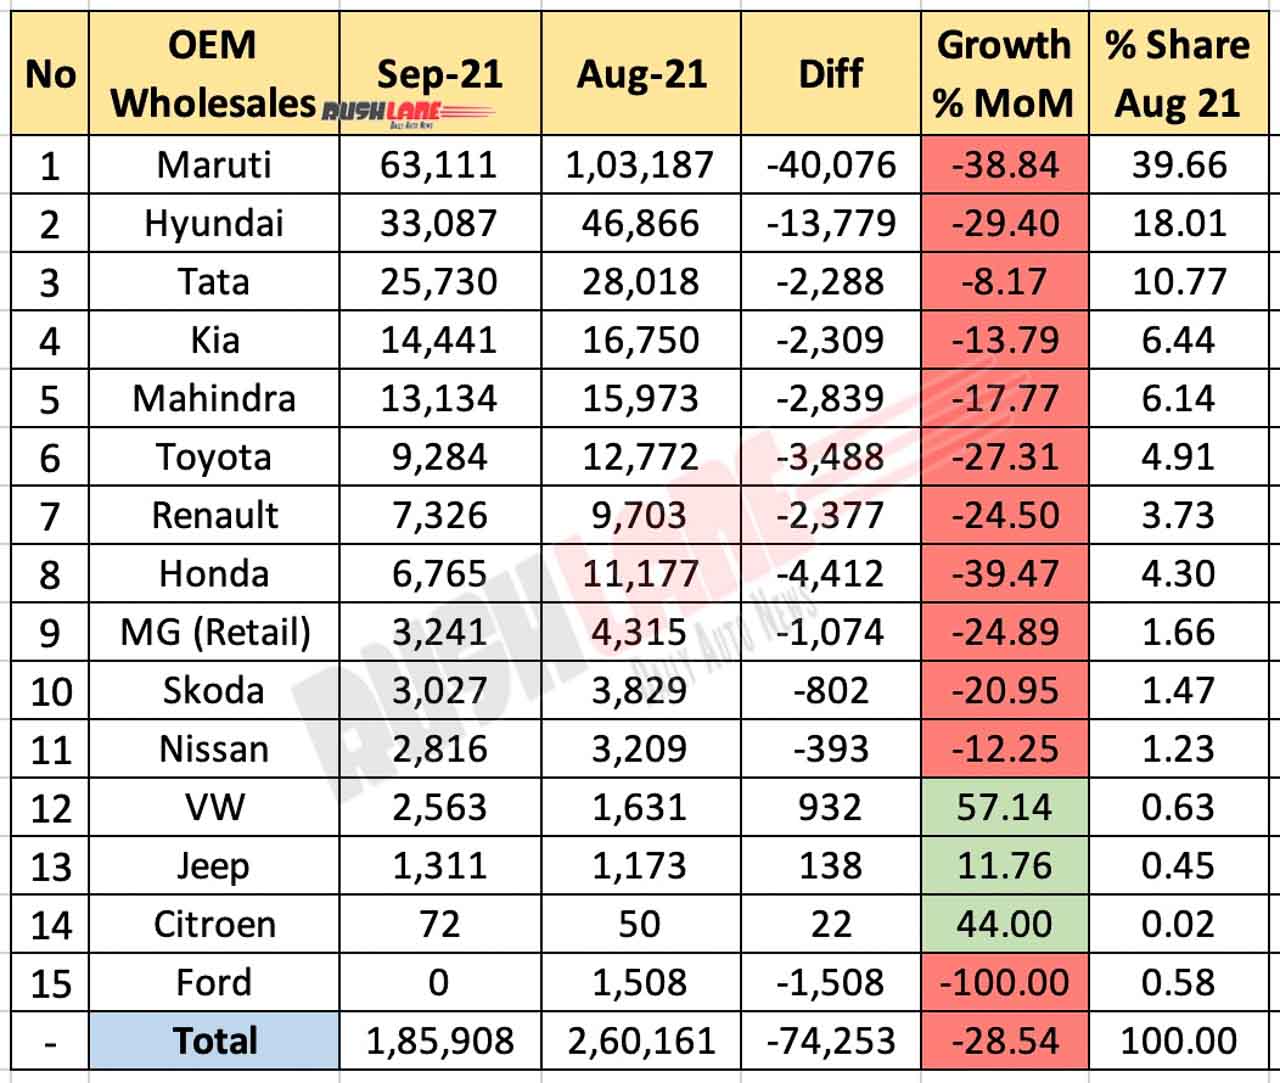 Car Sales Sep 2021 vs Aug 2021 (MoM)